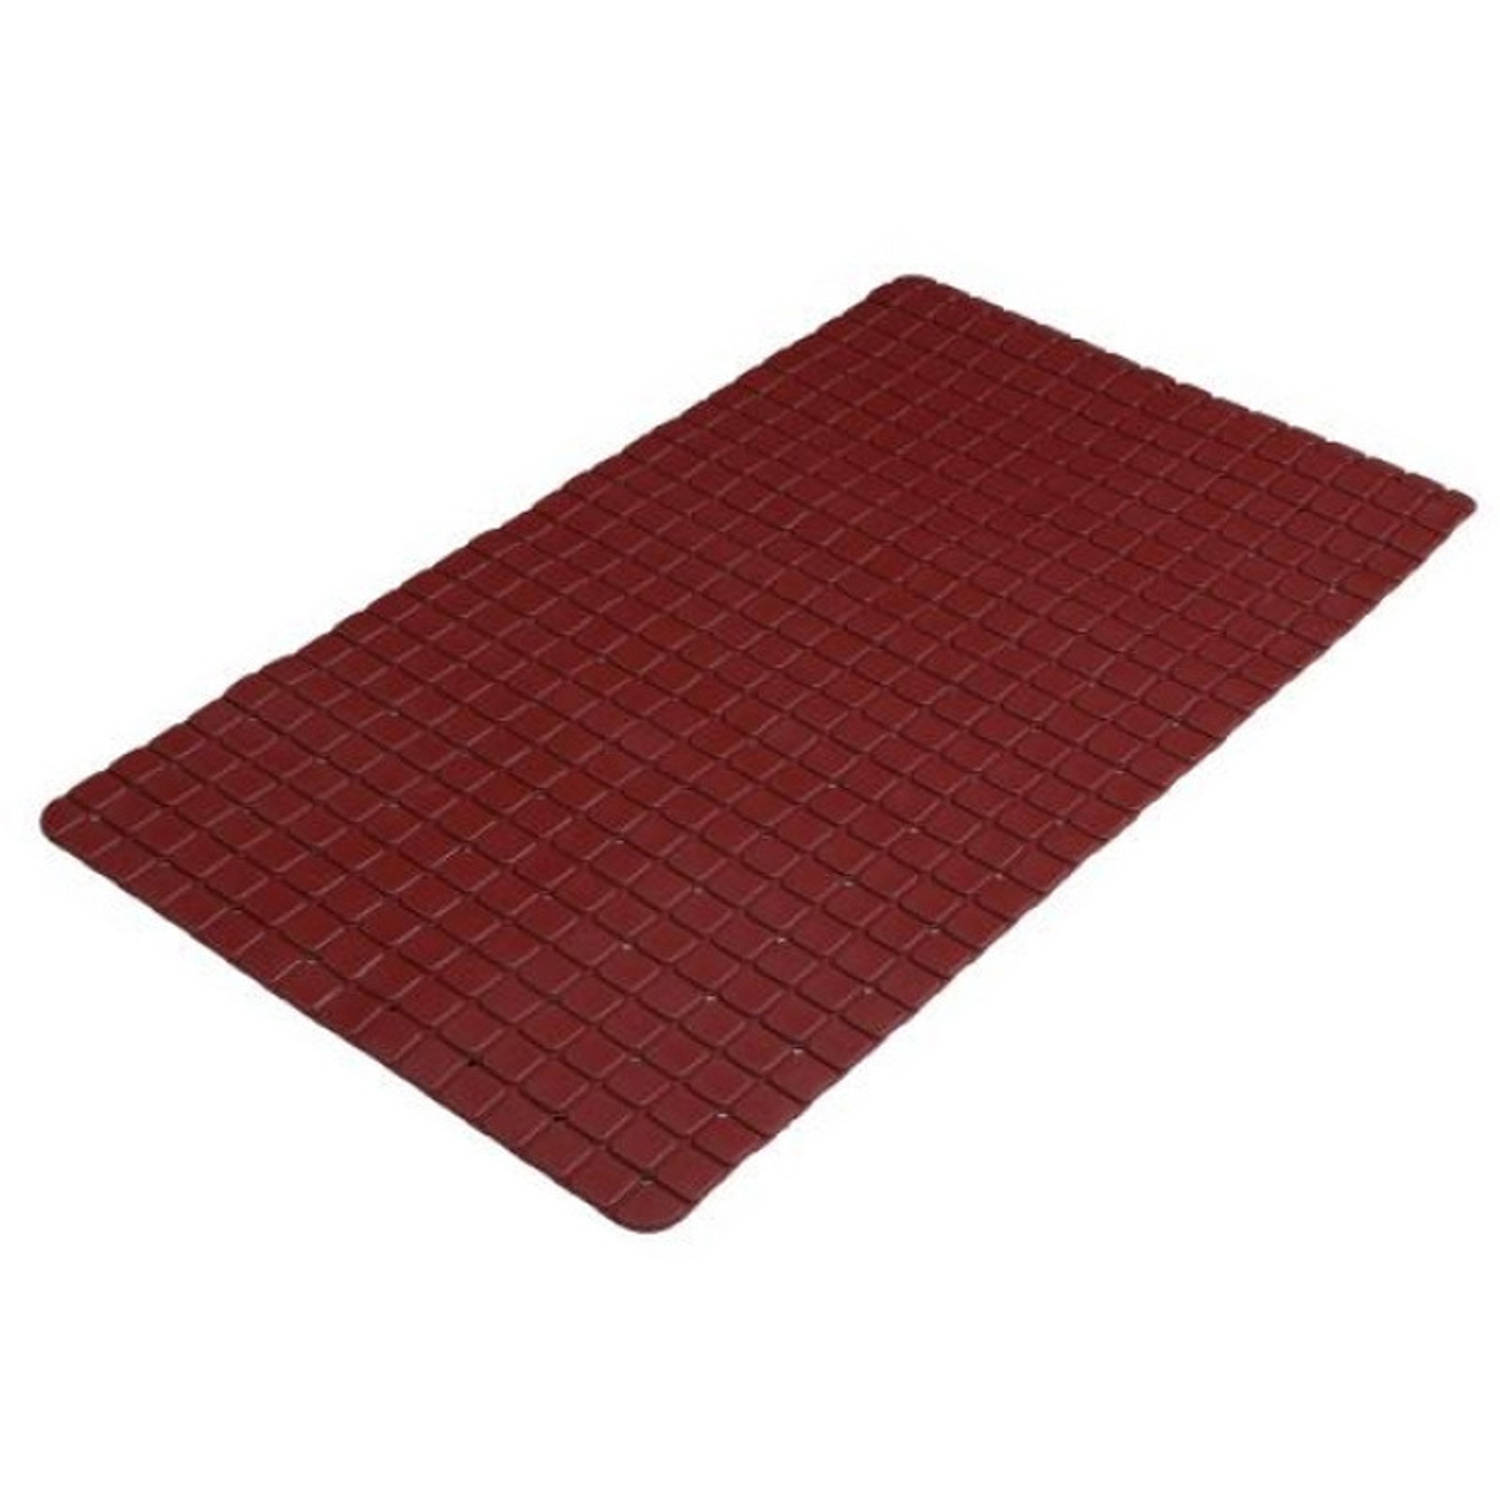 Urban Living Badkamer/douche anti slip mat - rubber - voor op de vloer - donkerrood - 39 x 69 cm